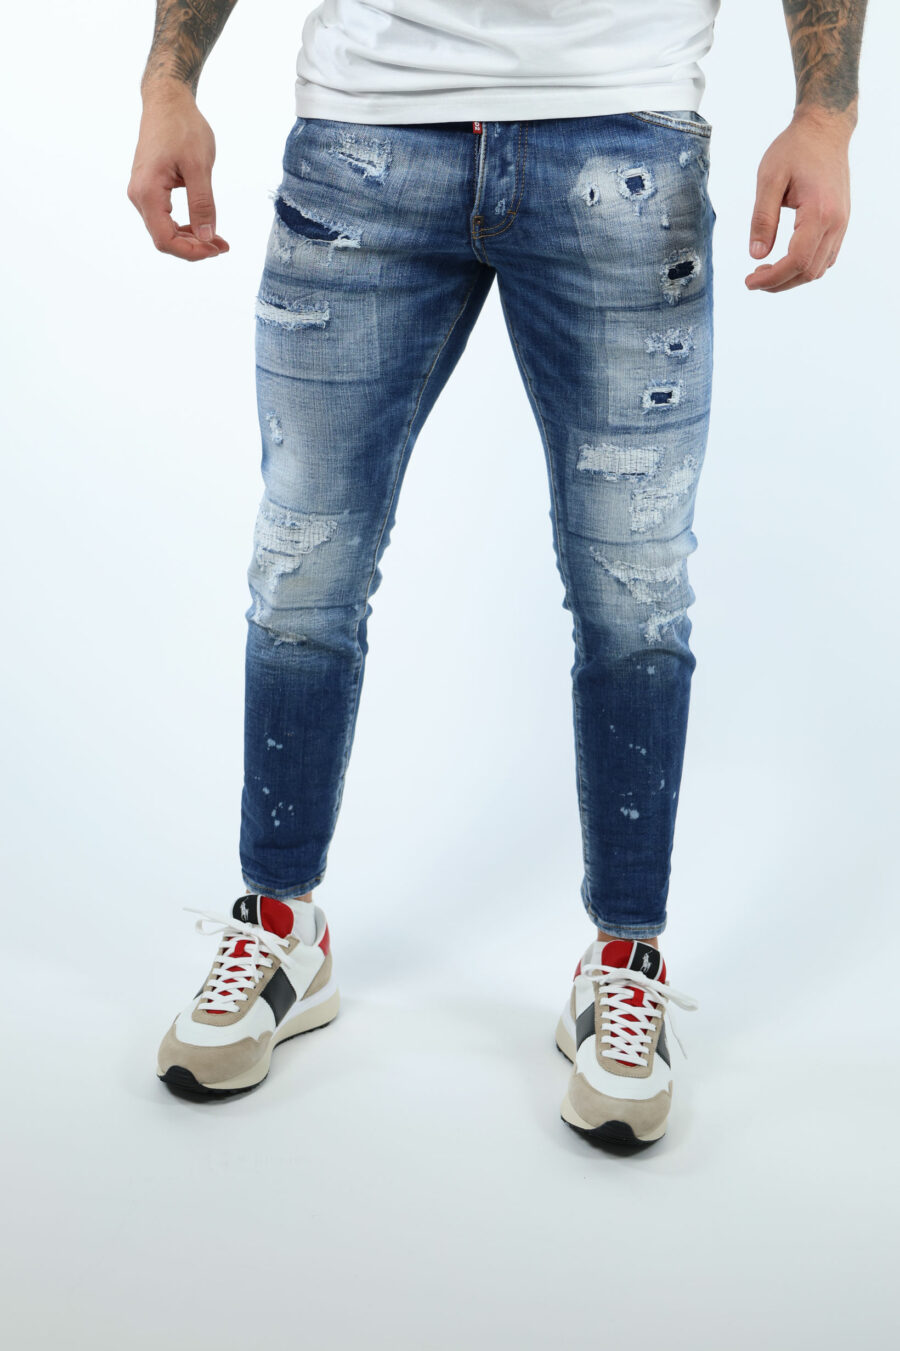 Pantalón vaquero azul claro "skater jean" con rotos y desgastado - 8054148338831 1